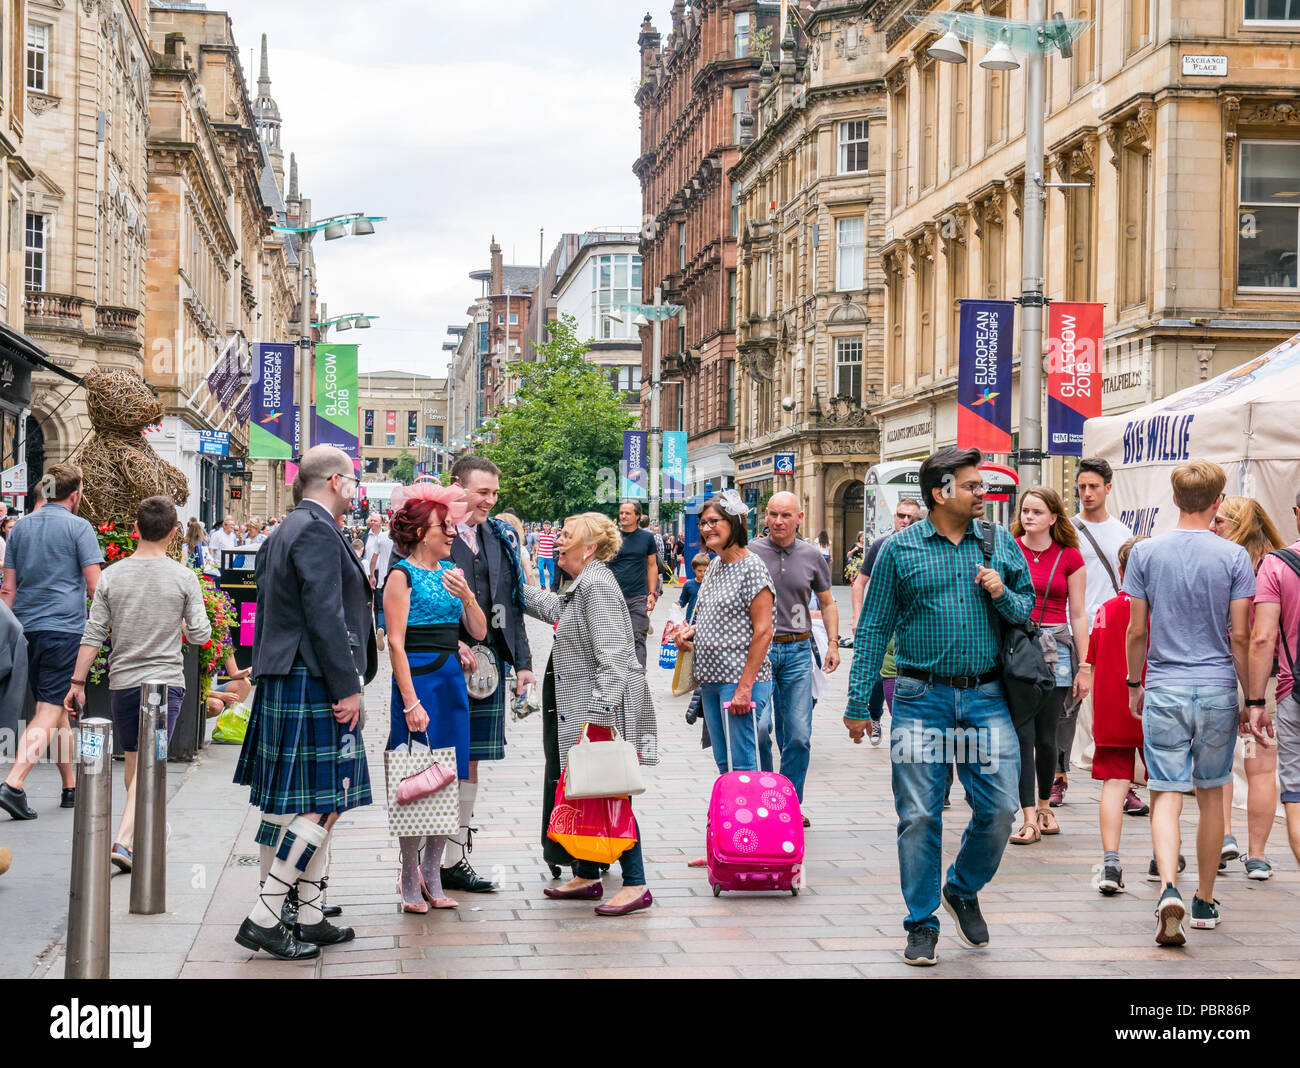 Persone vestite per un matrimonio con uomini in kilts fermarsi per dire ciao e saluto ciascuno di altri in una strada trafficata, Buchanan Street, Glasgow, Scotland, Regno Unito Foto Stock